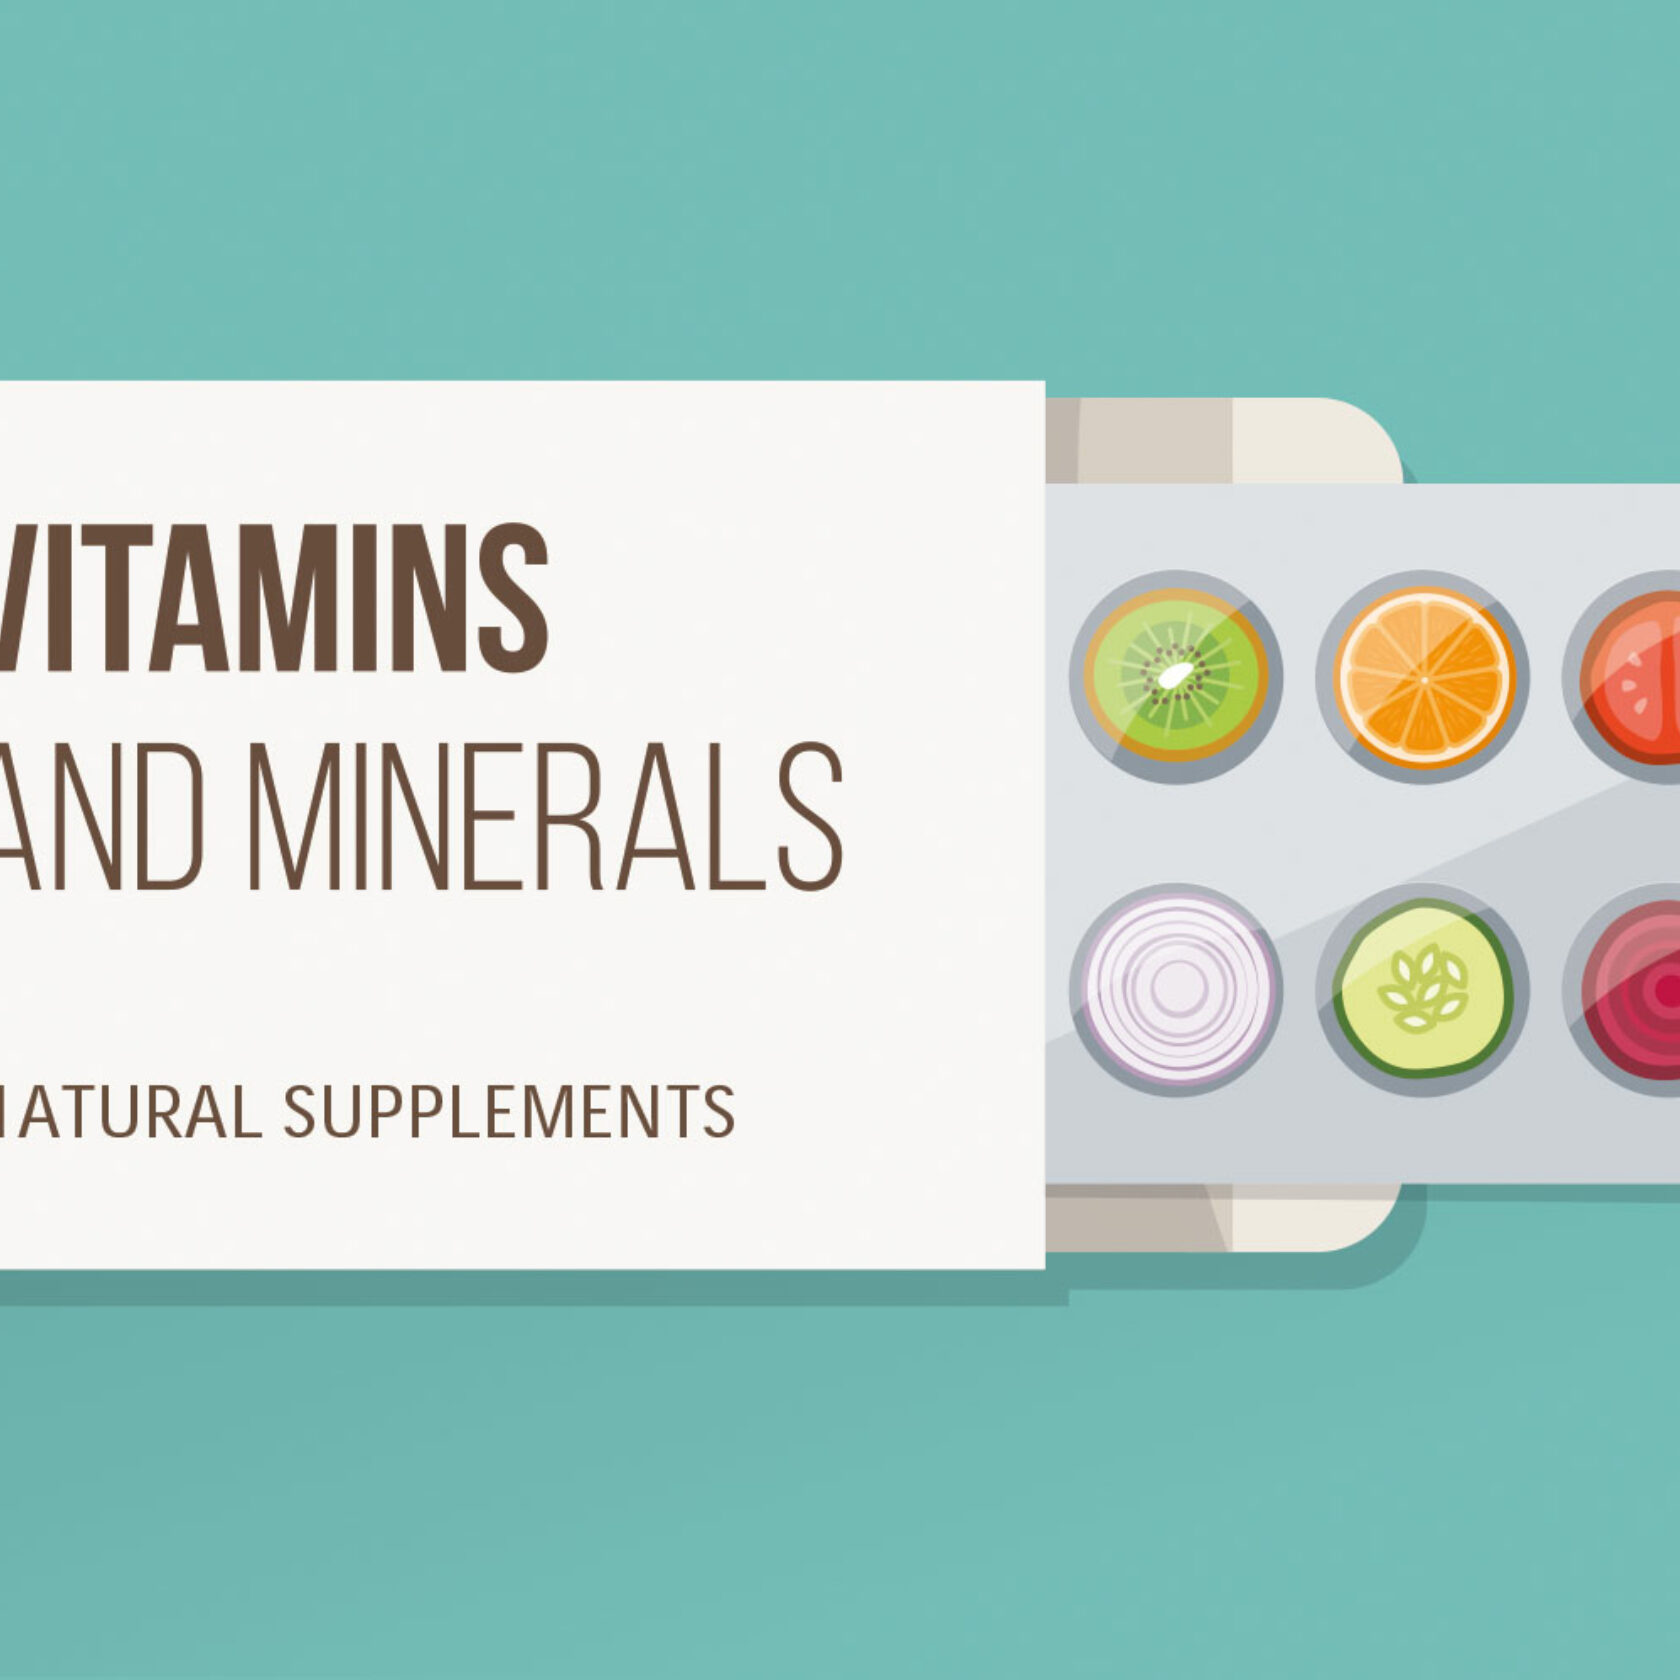 Flat-Darstellung einer Blisterverpackung mit Vitaminen und Mineralien